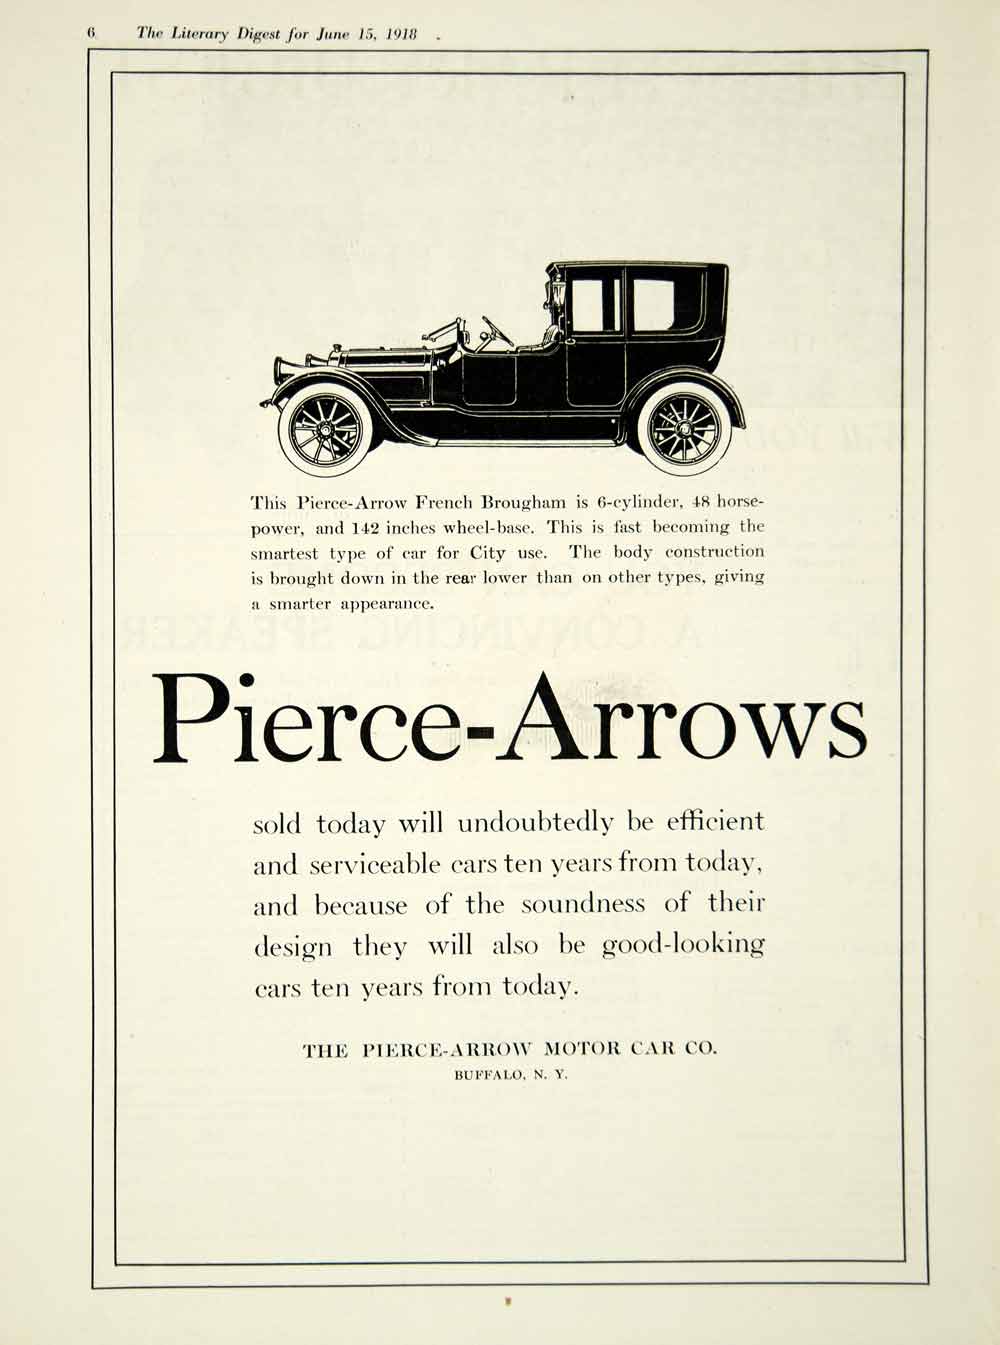 1918 Ad French Brougham Six Cylinder Pierce Arrow Motor Car Company Buffalo YLD1